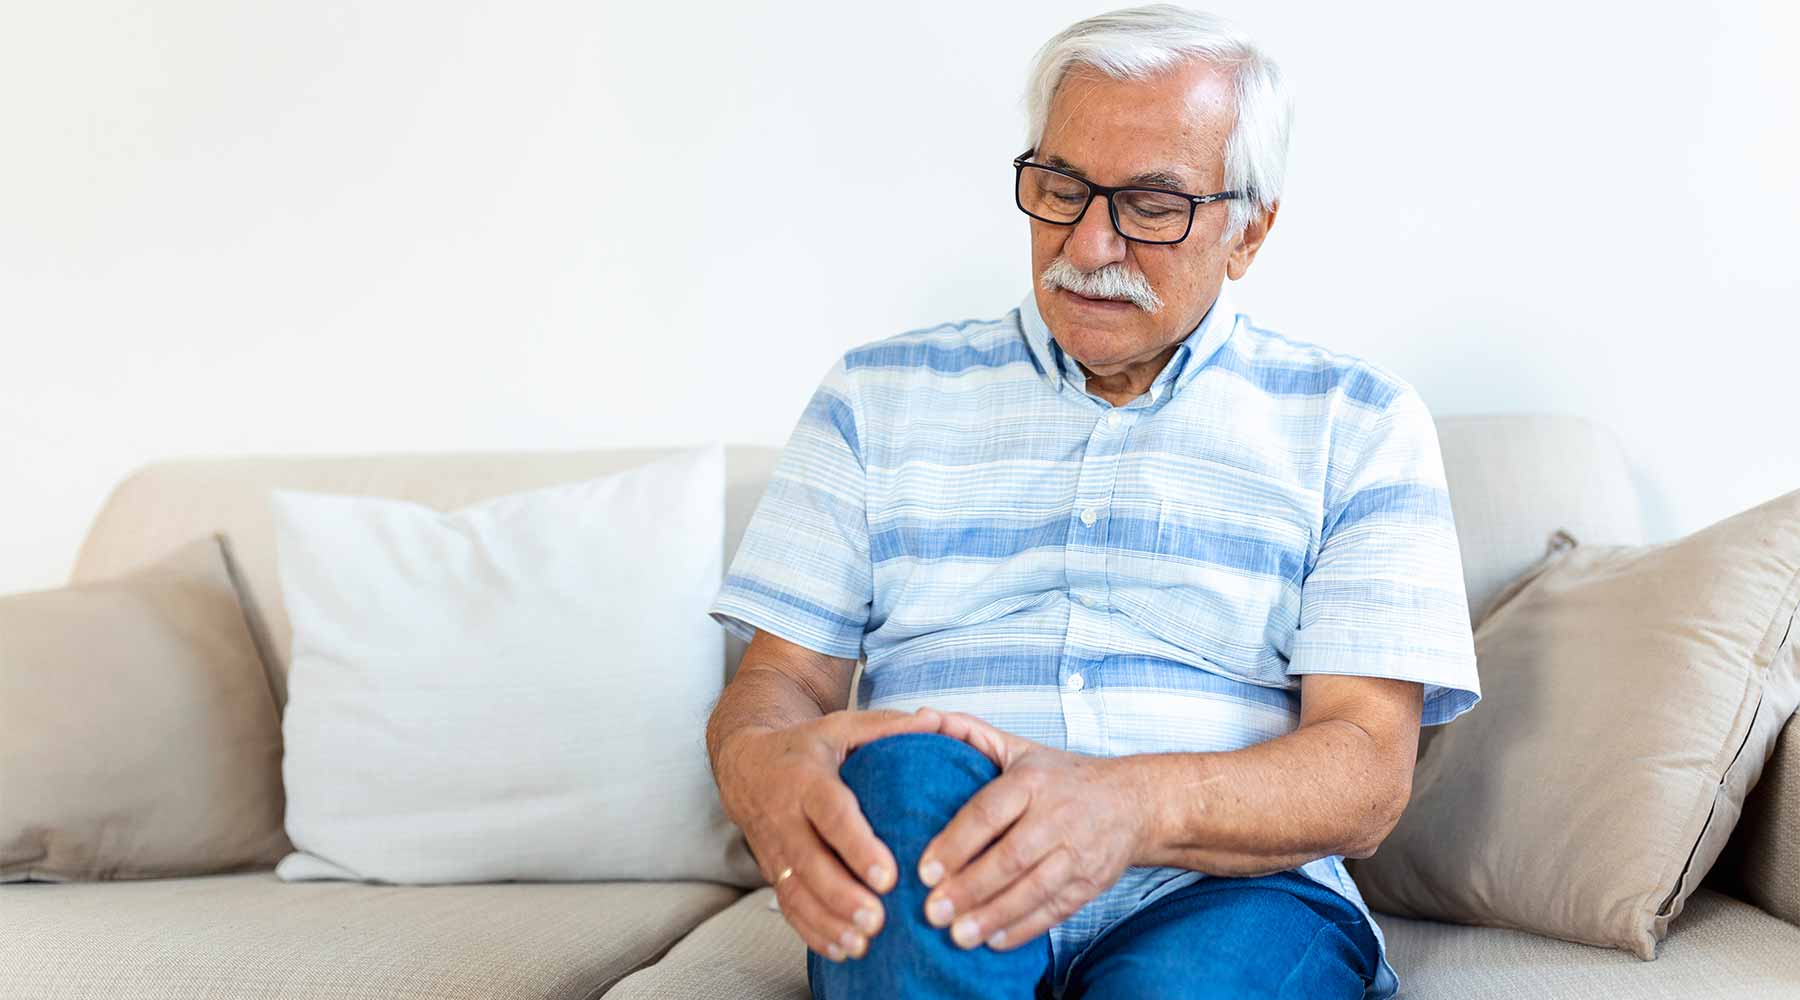 Hipopotasemia en persona mayor con dolor de rodilla a causa de bajada de potasio.